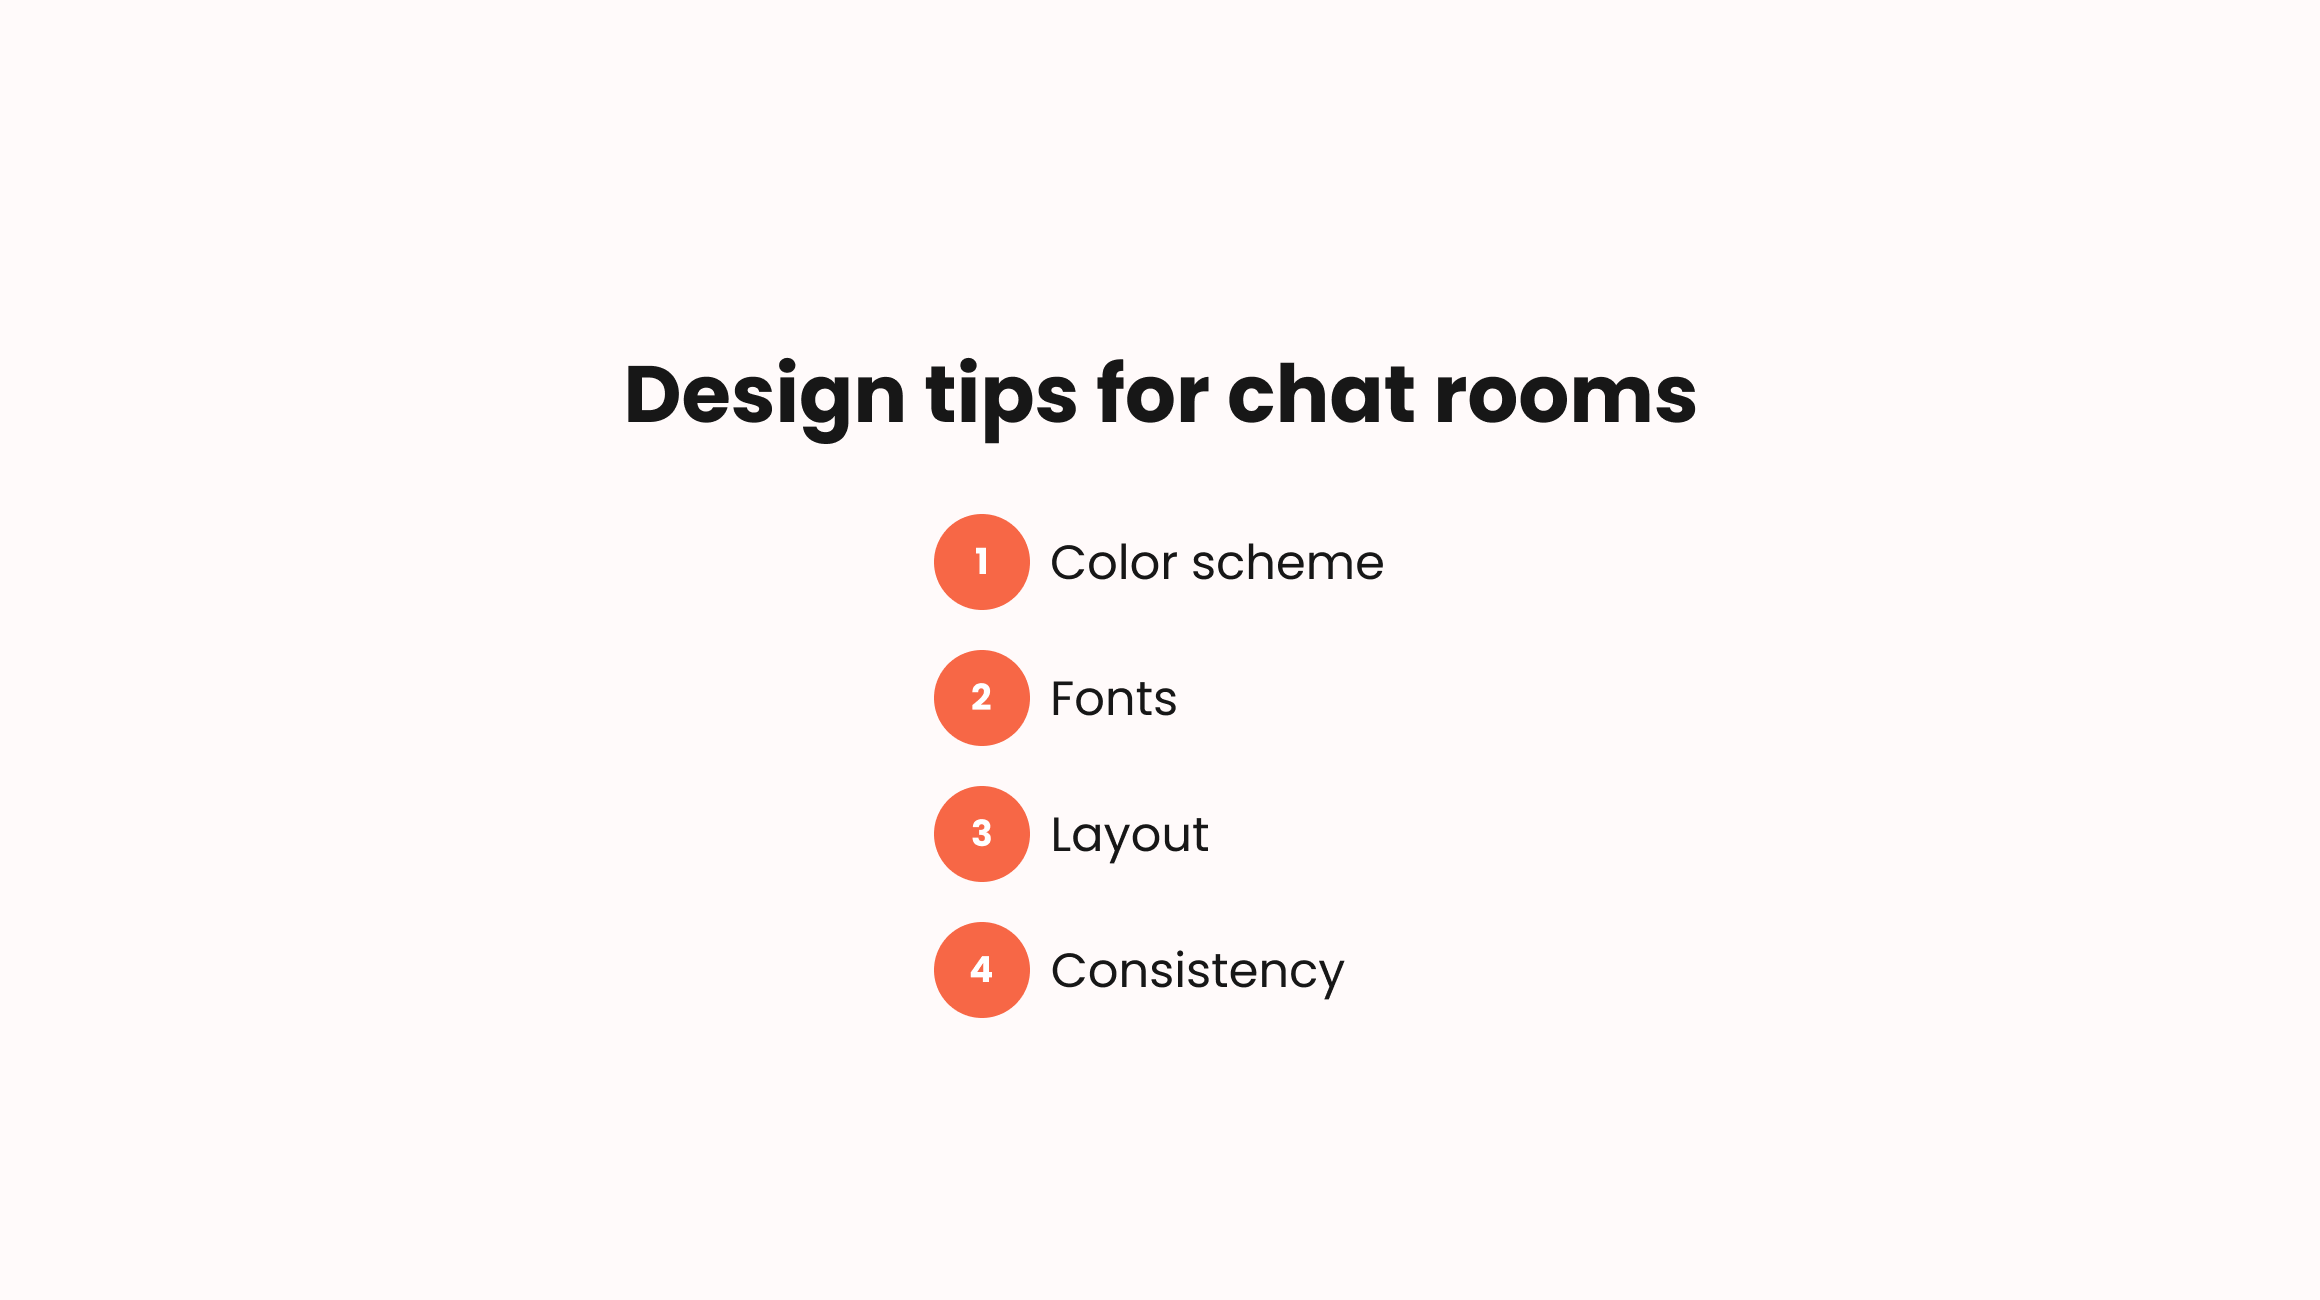 Design tips